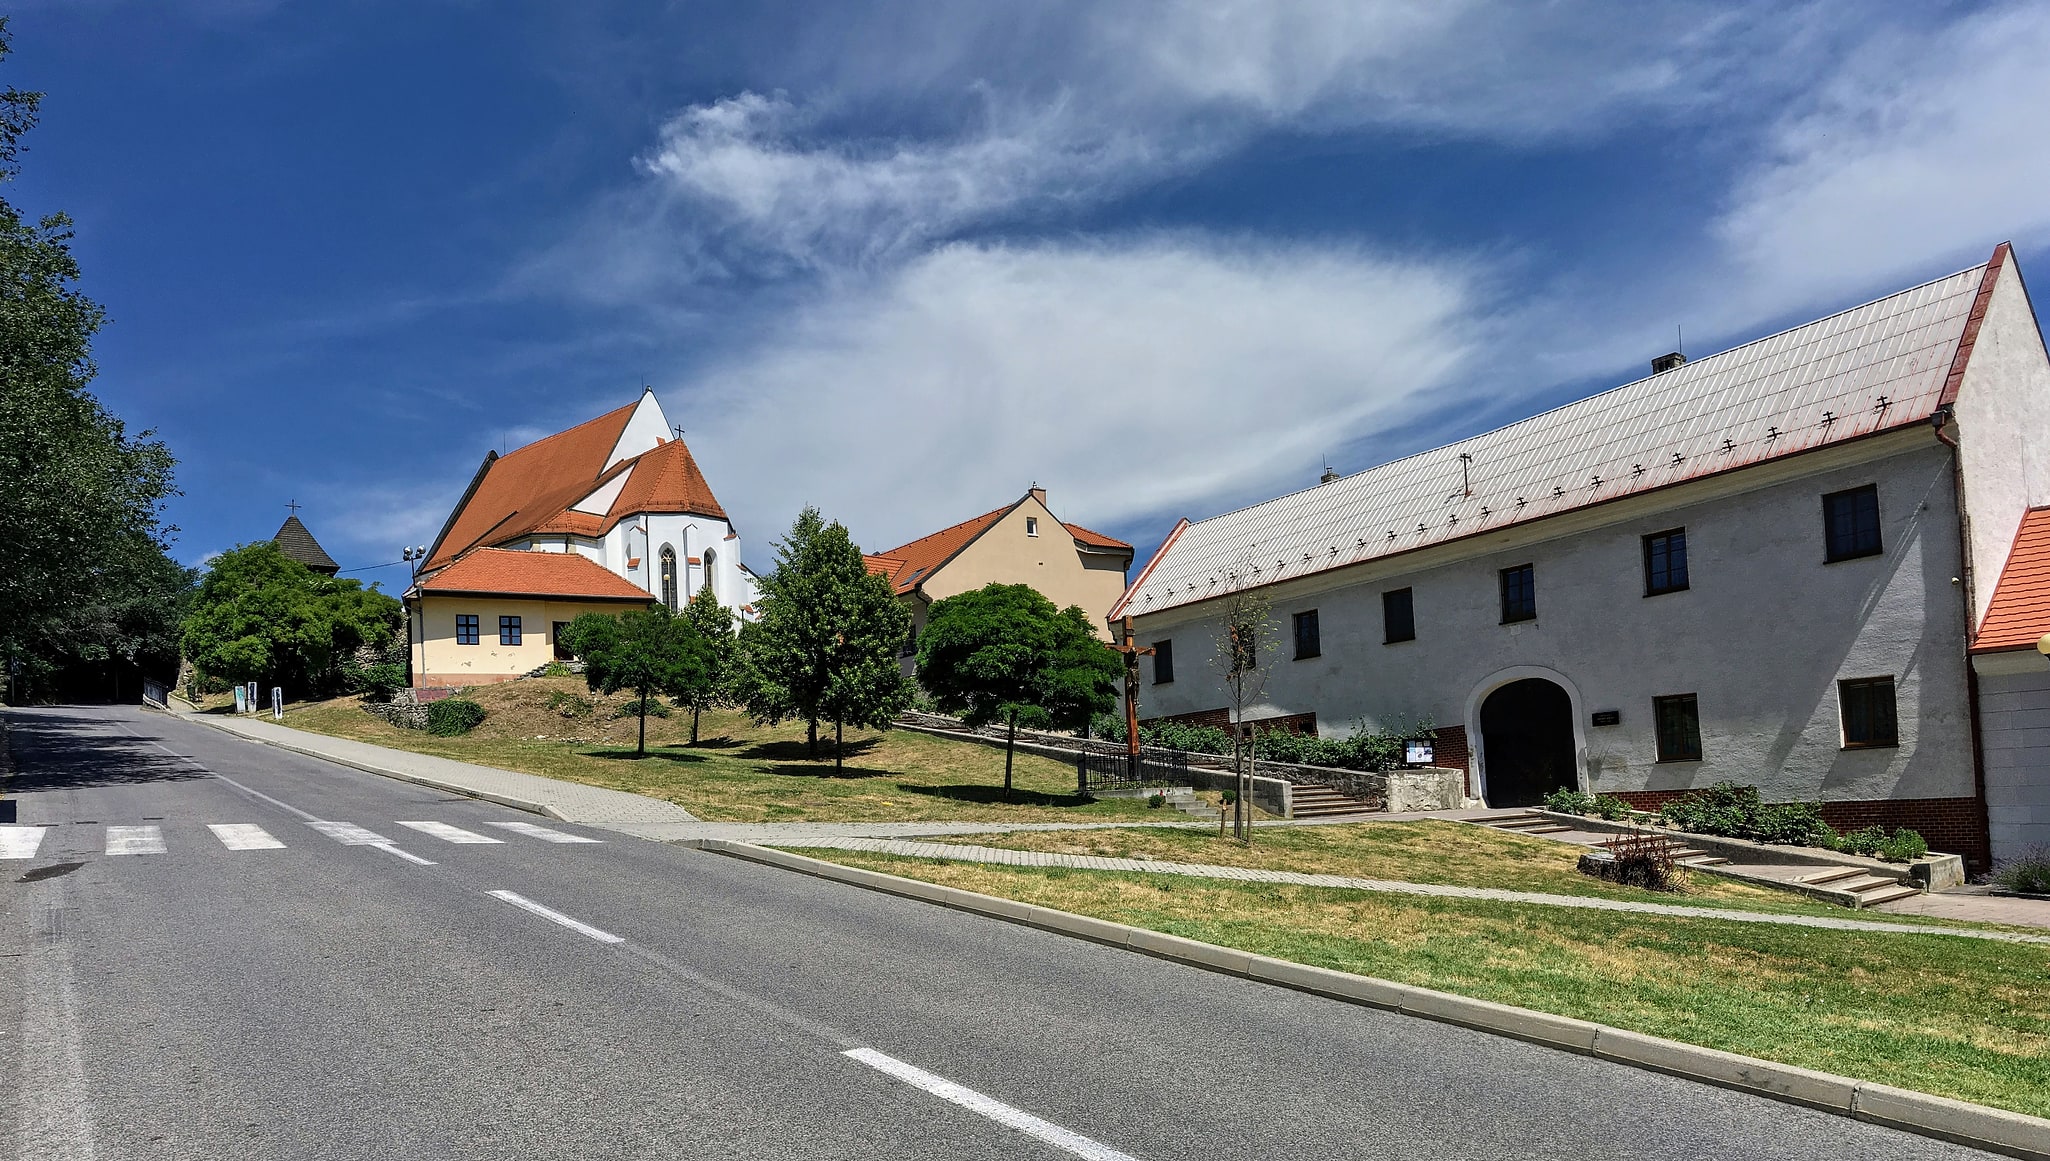 Svätý Jur, Slovakia